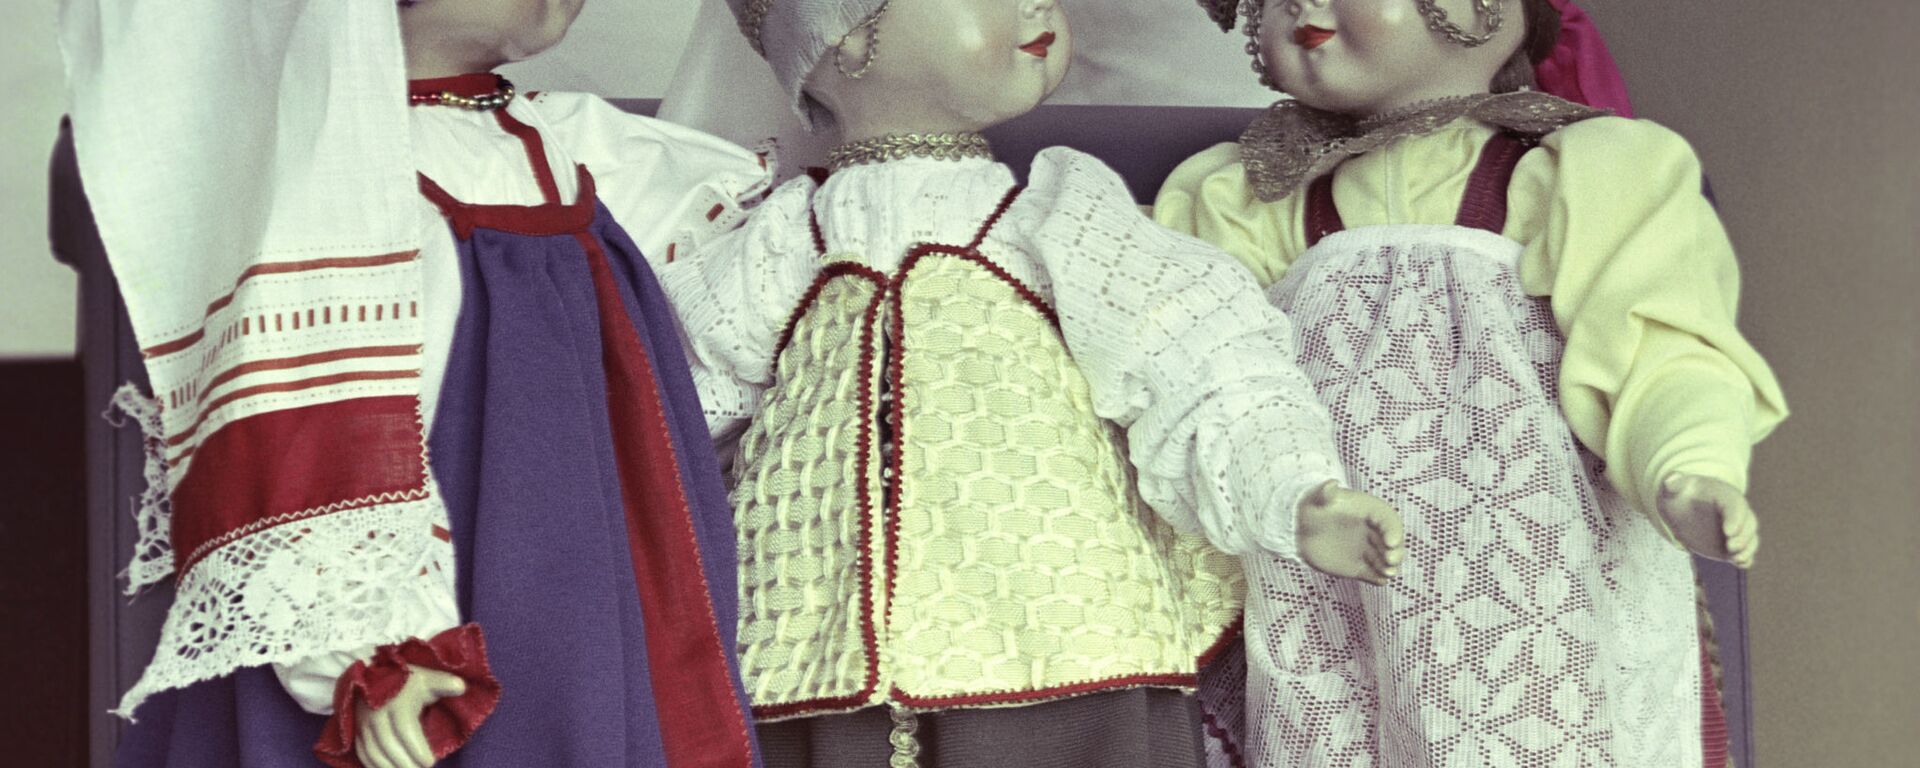 Куклы в национальных костюмах - Sputnik Узбекистан, 1920, 15.09.2021